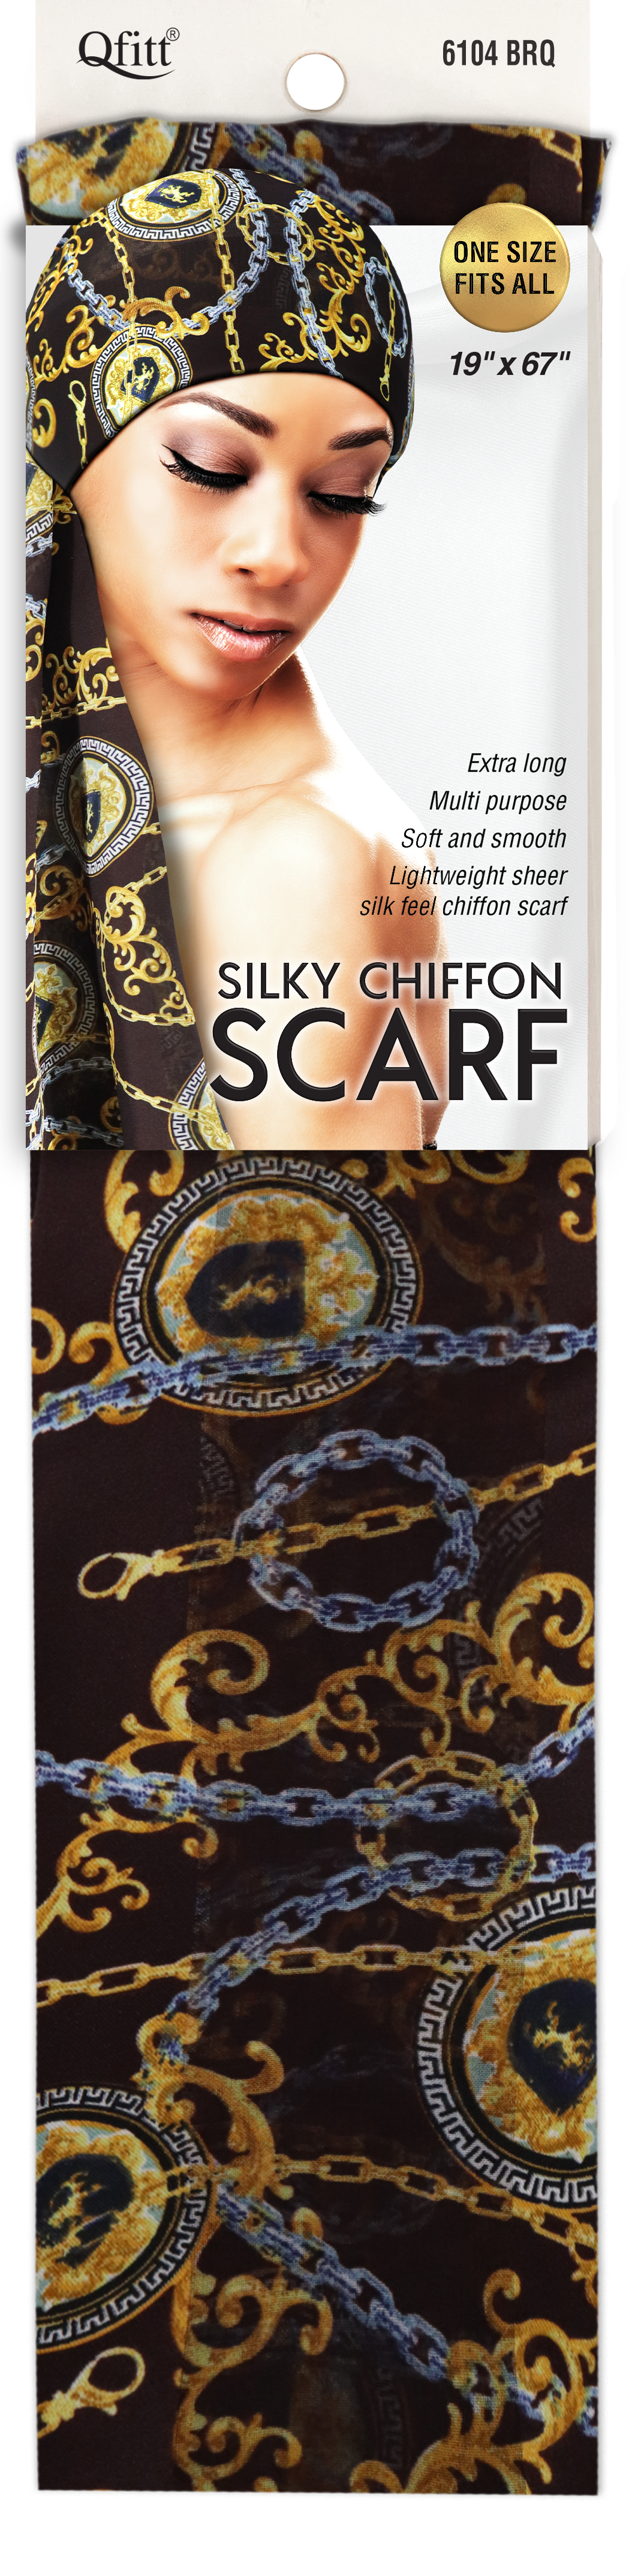 SILKY CHIFFON SCARF